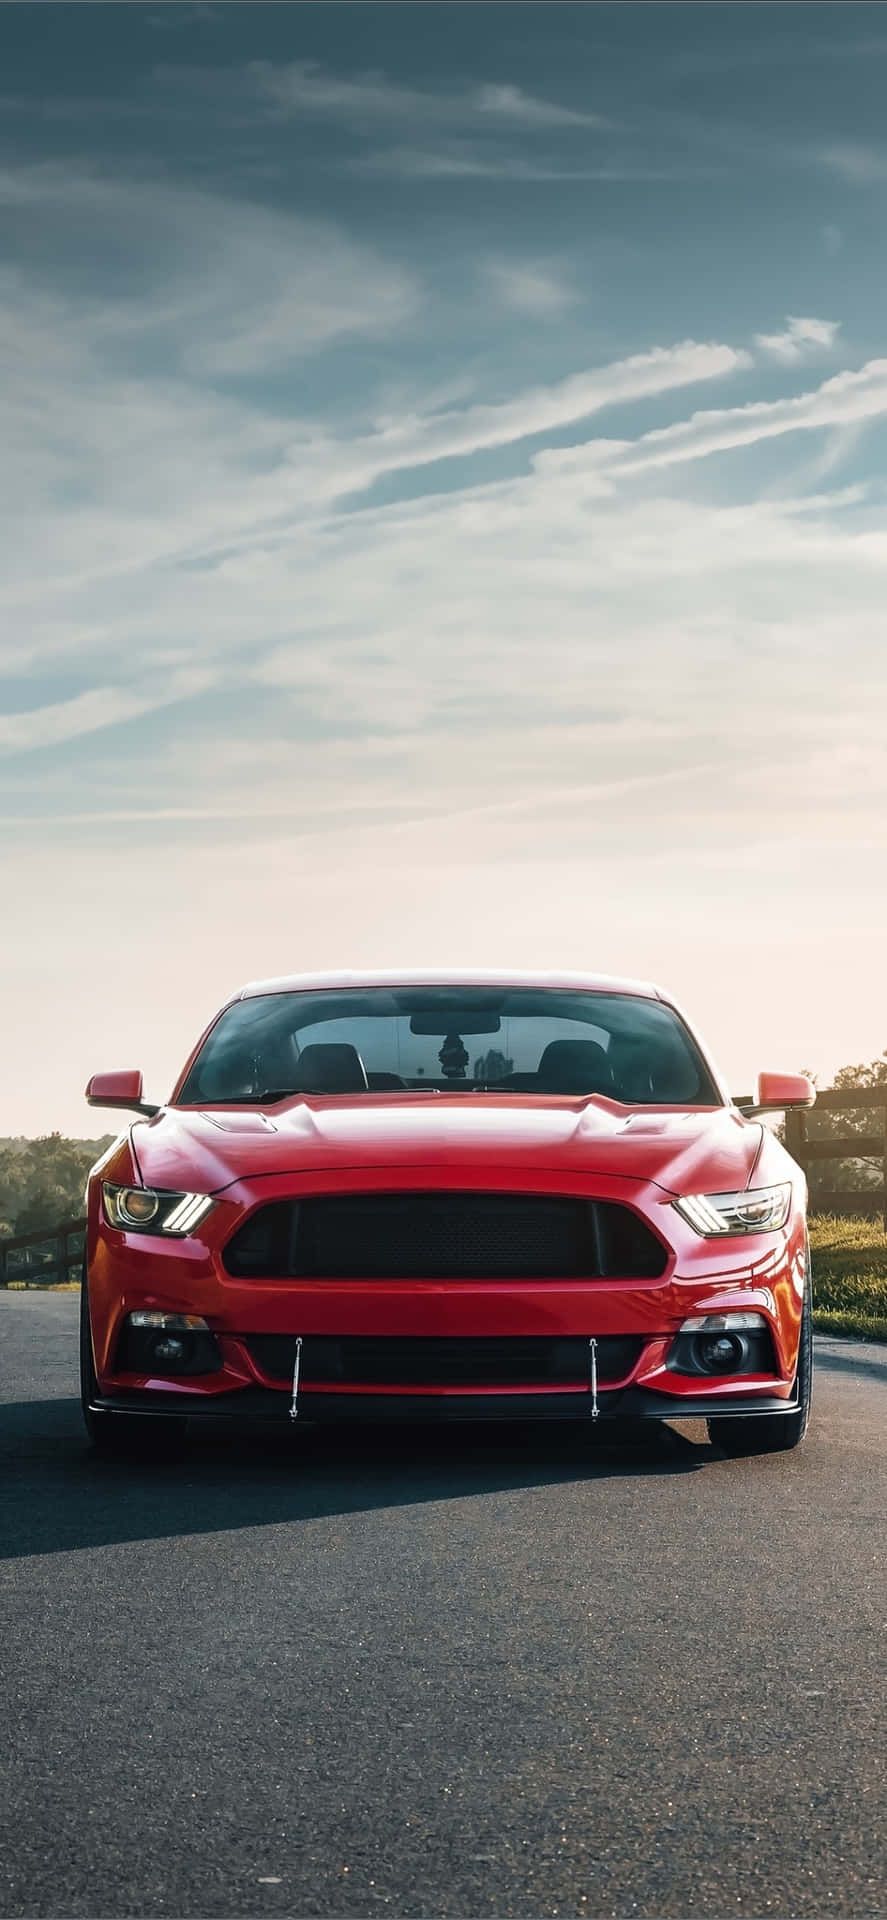 Ford Mustang 2019 Sportbilmodell Wallpaper